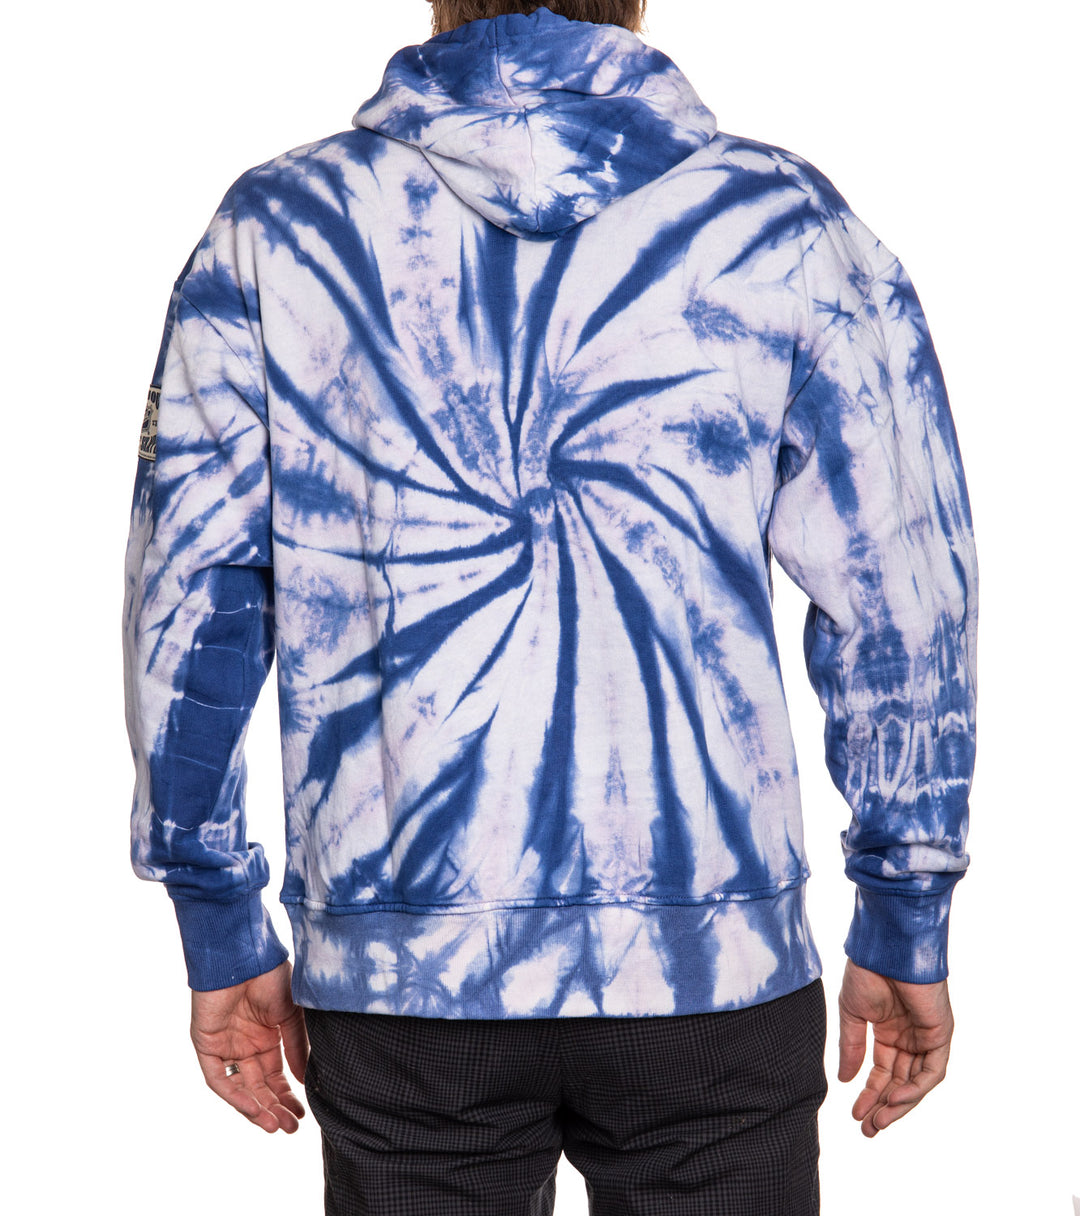 Official NHL licensed Seattle Kraken Spiral Tie Dye hoodie